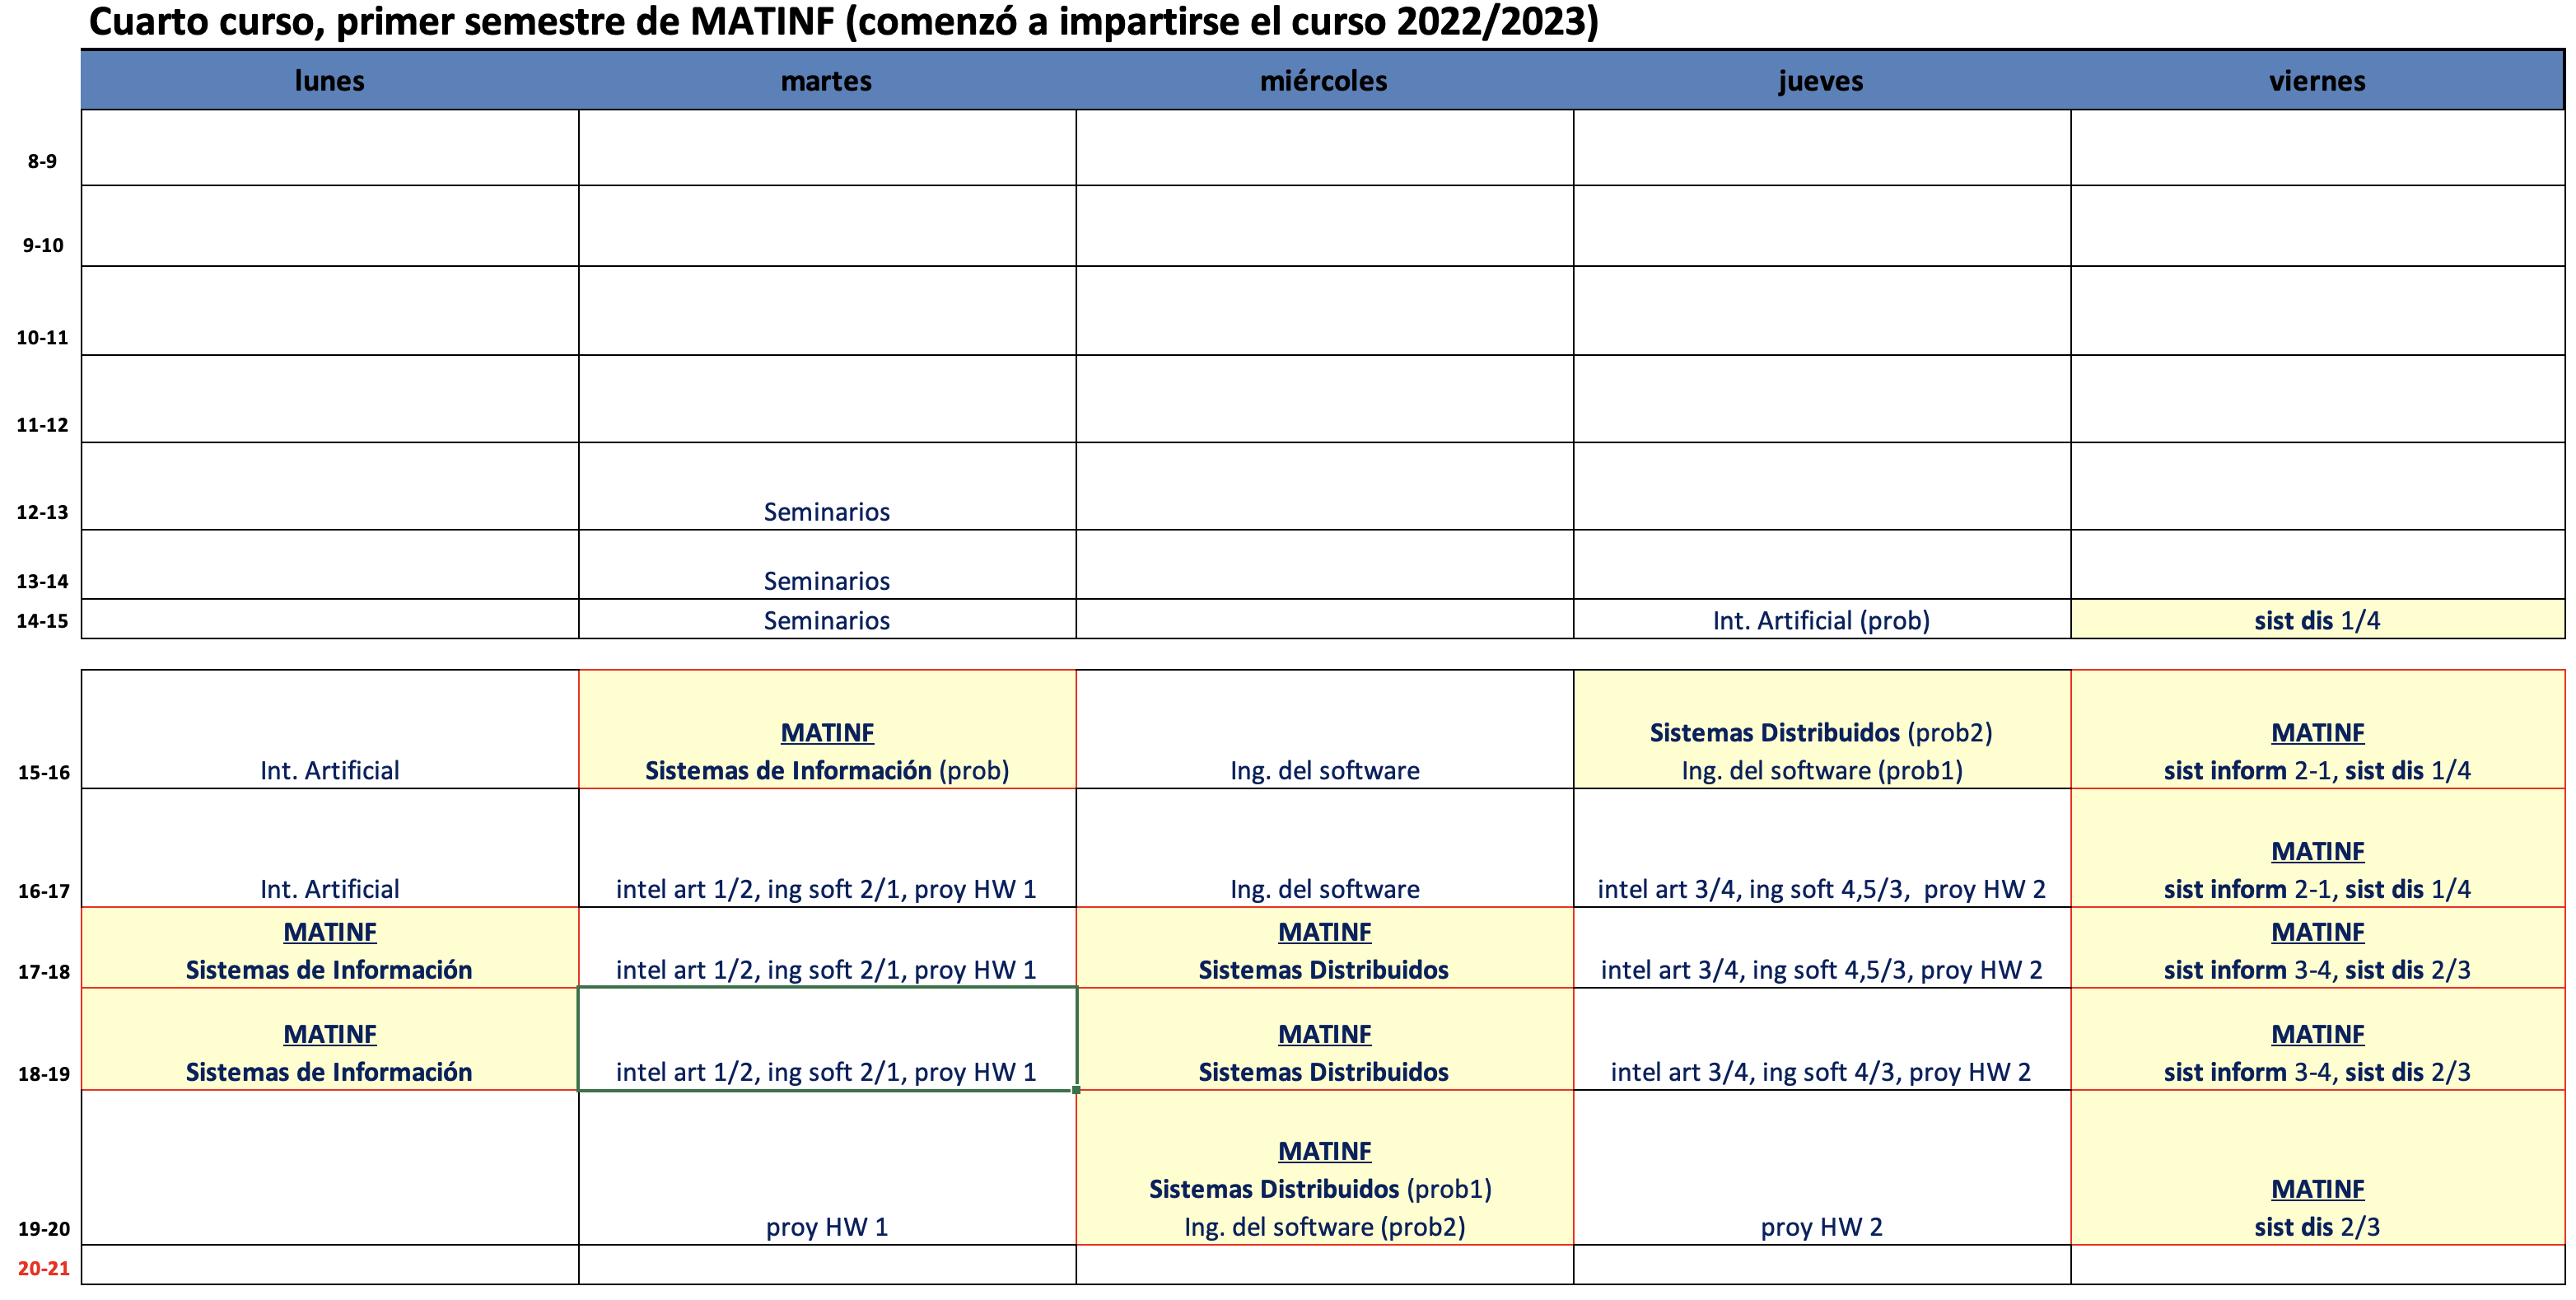 Cuarto curso, primer semestre de MATINF (comienza a impartirse el curso 2022/2023)